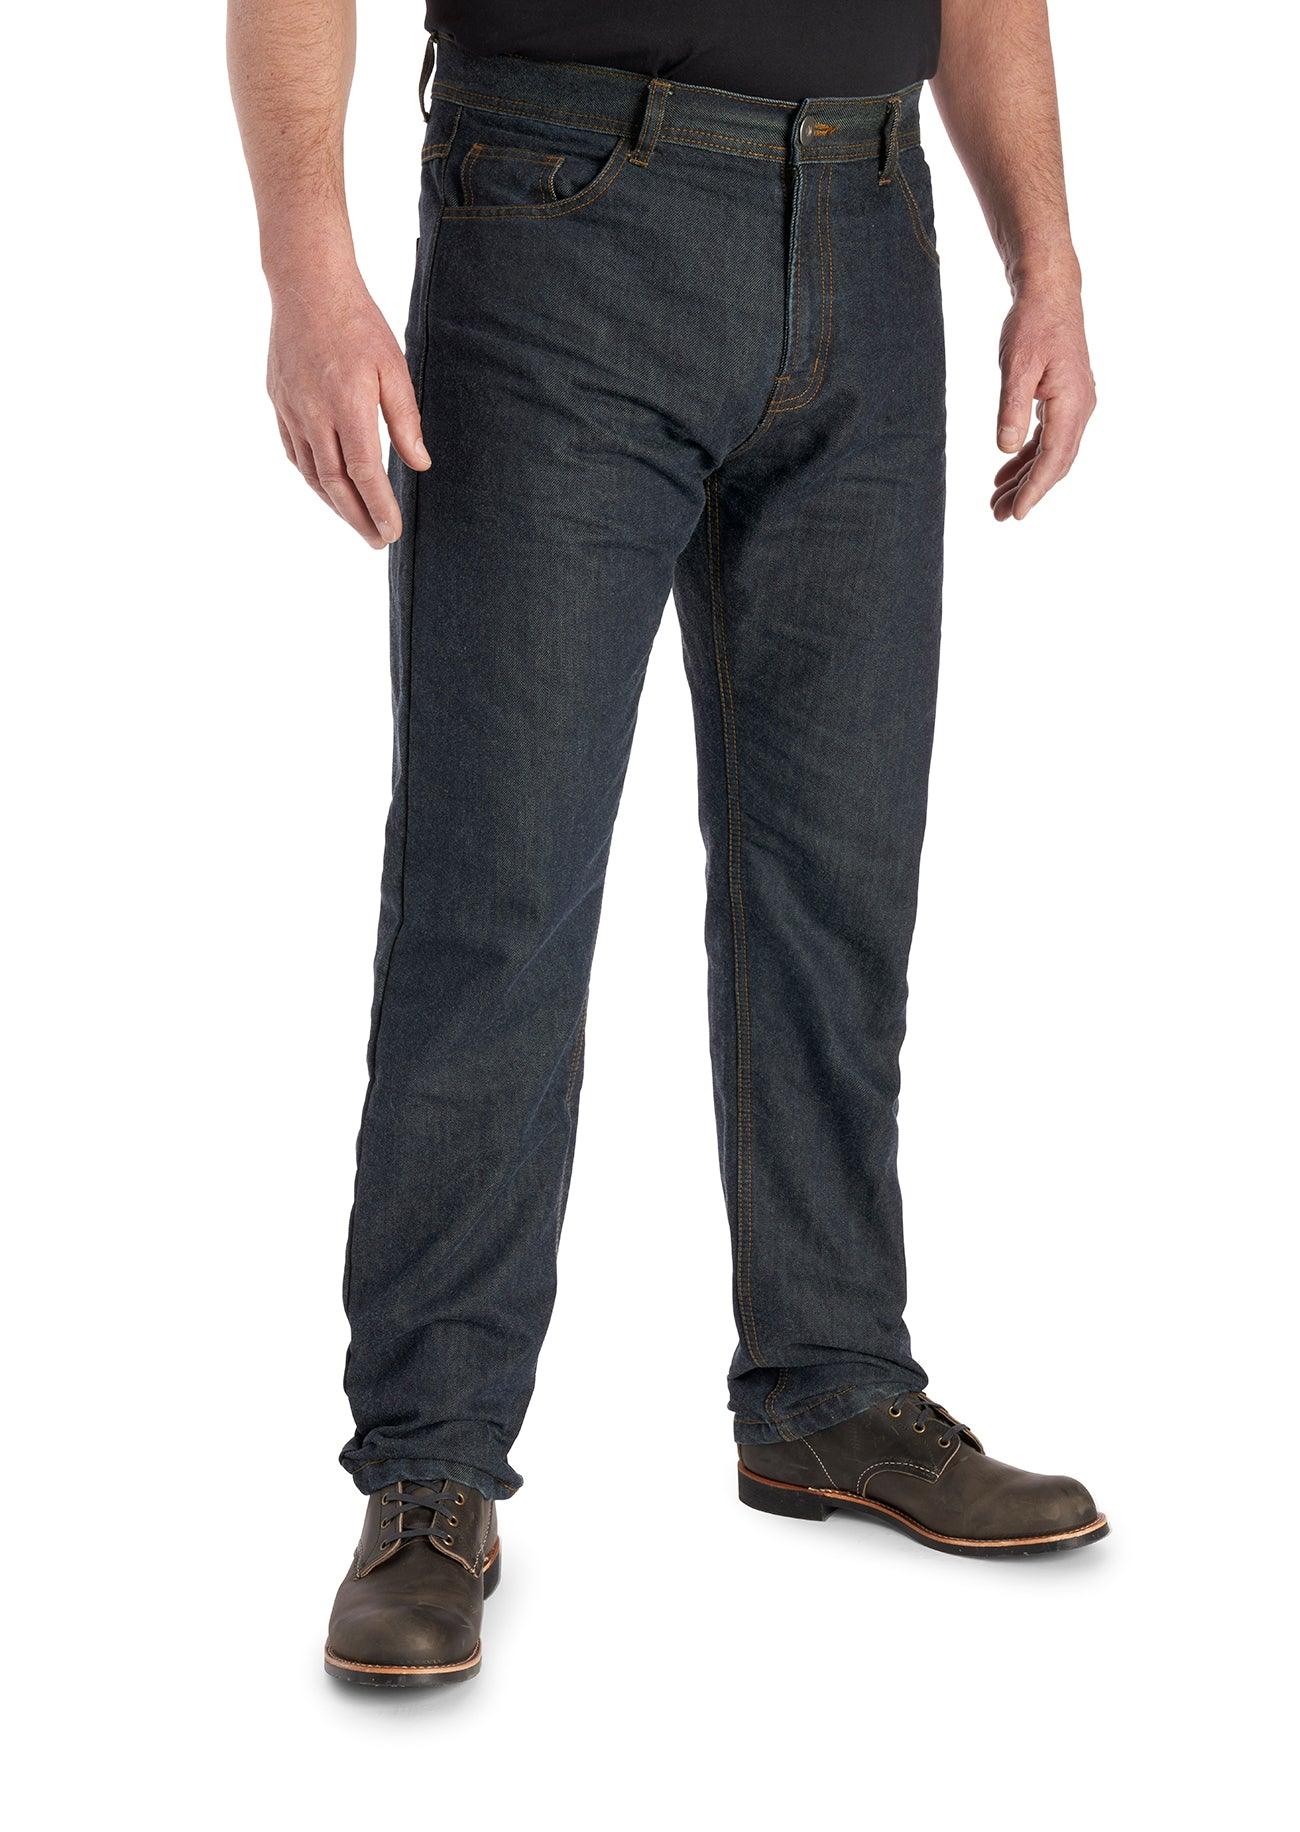 Easyrider AA rated motorcycle jeans by Roadskin – Roadskin®